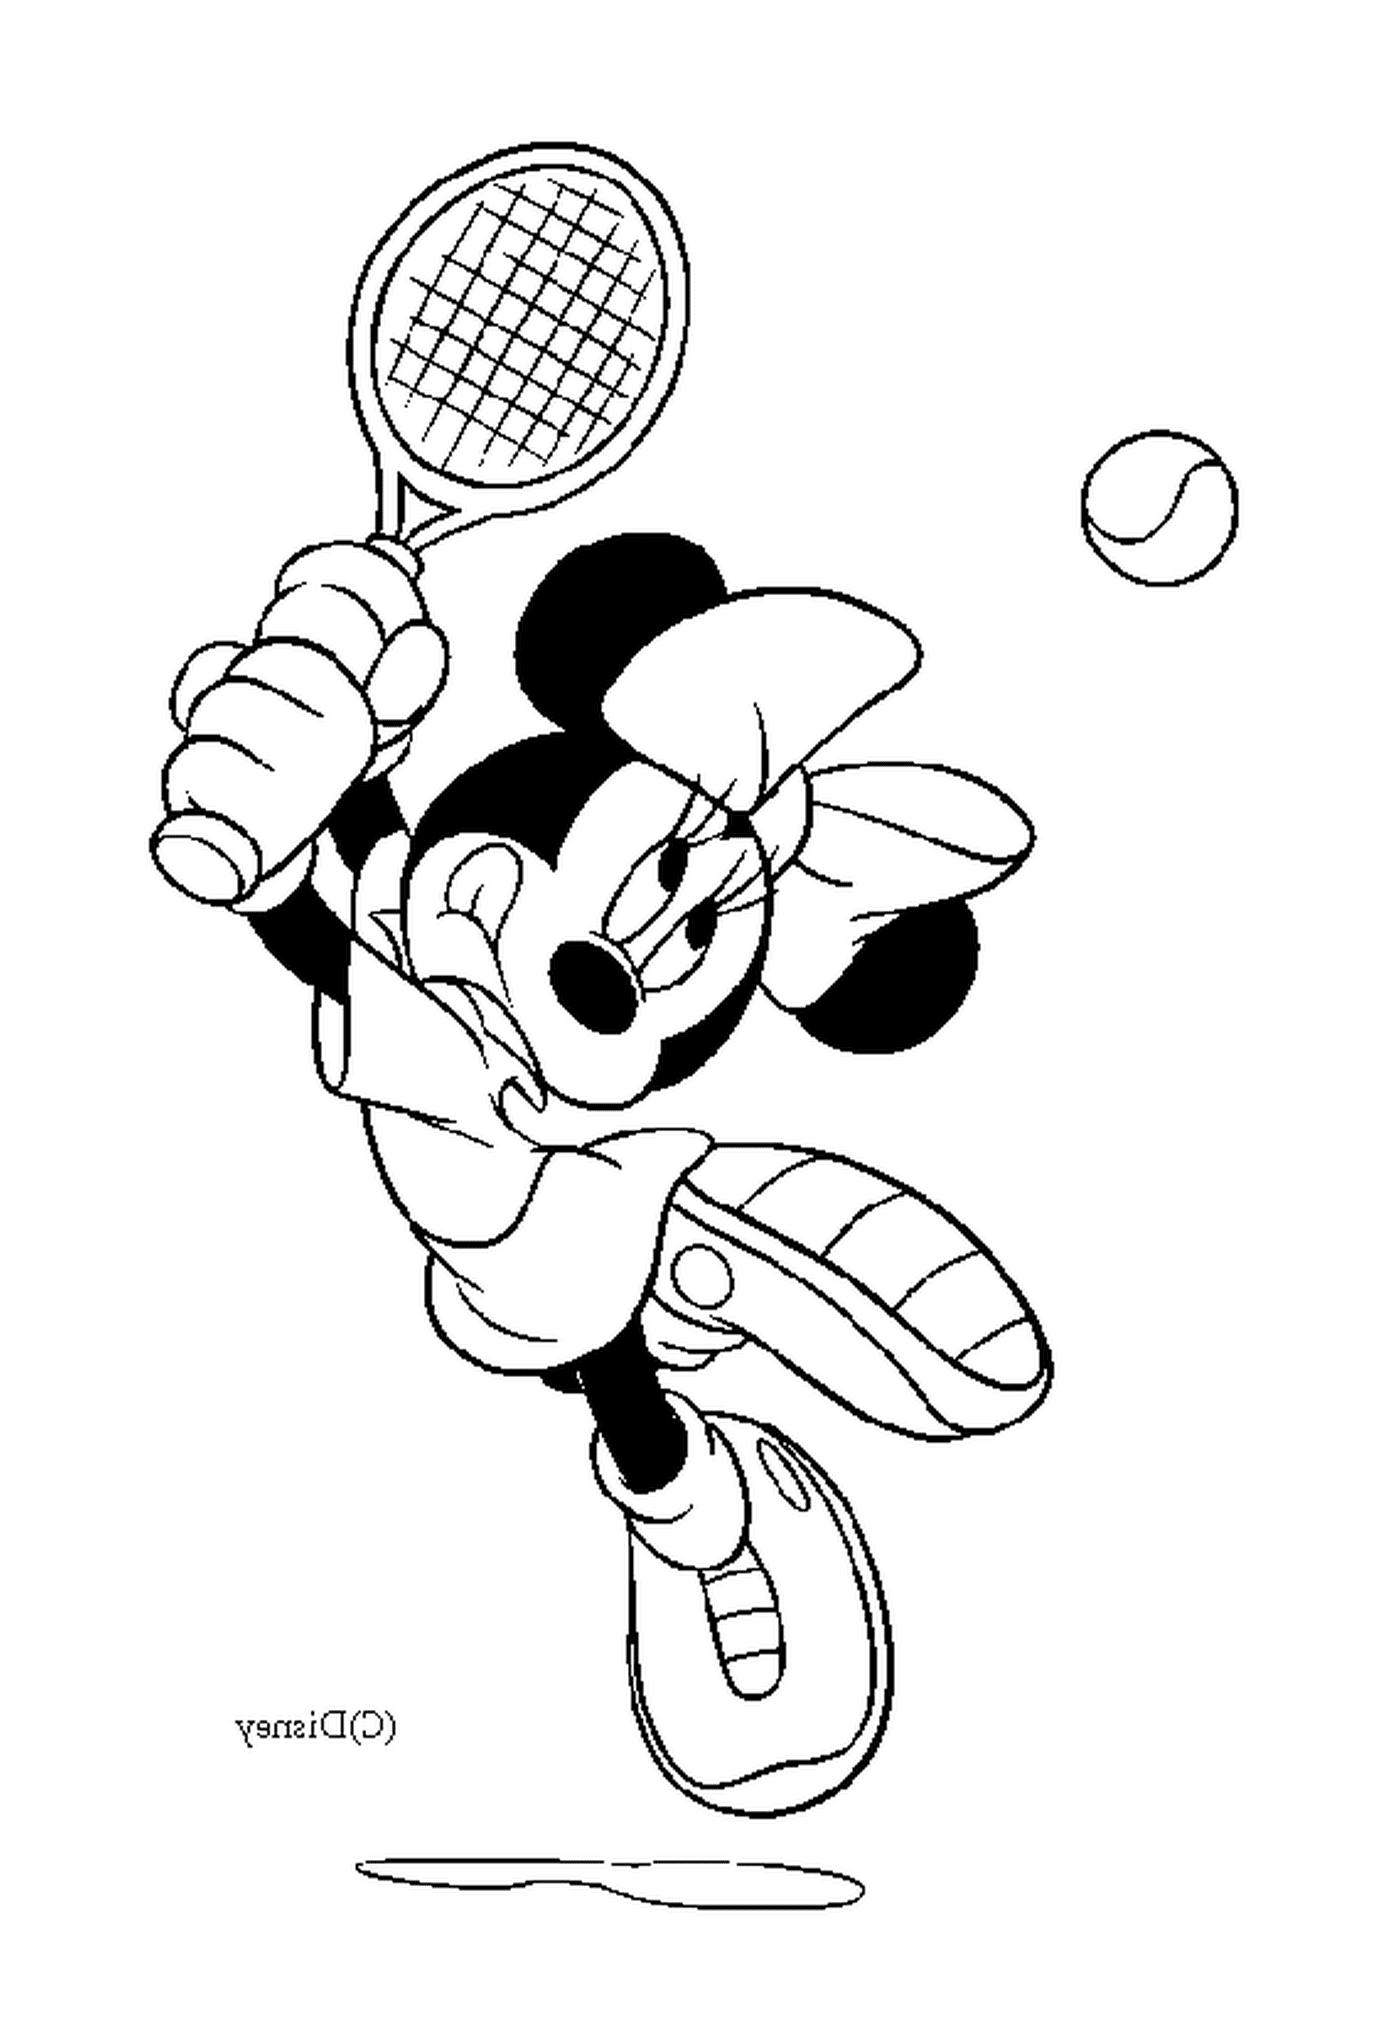  Минни играет в теннис 